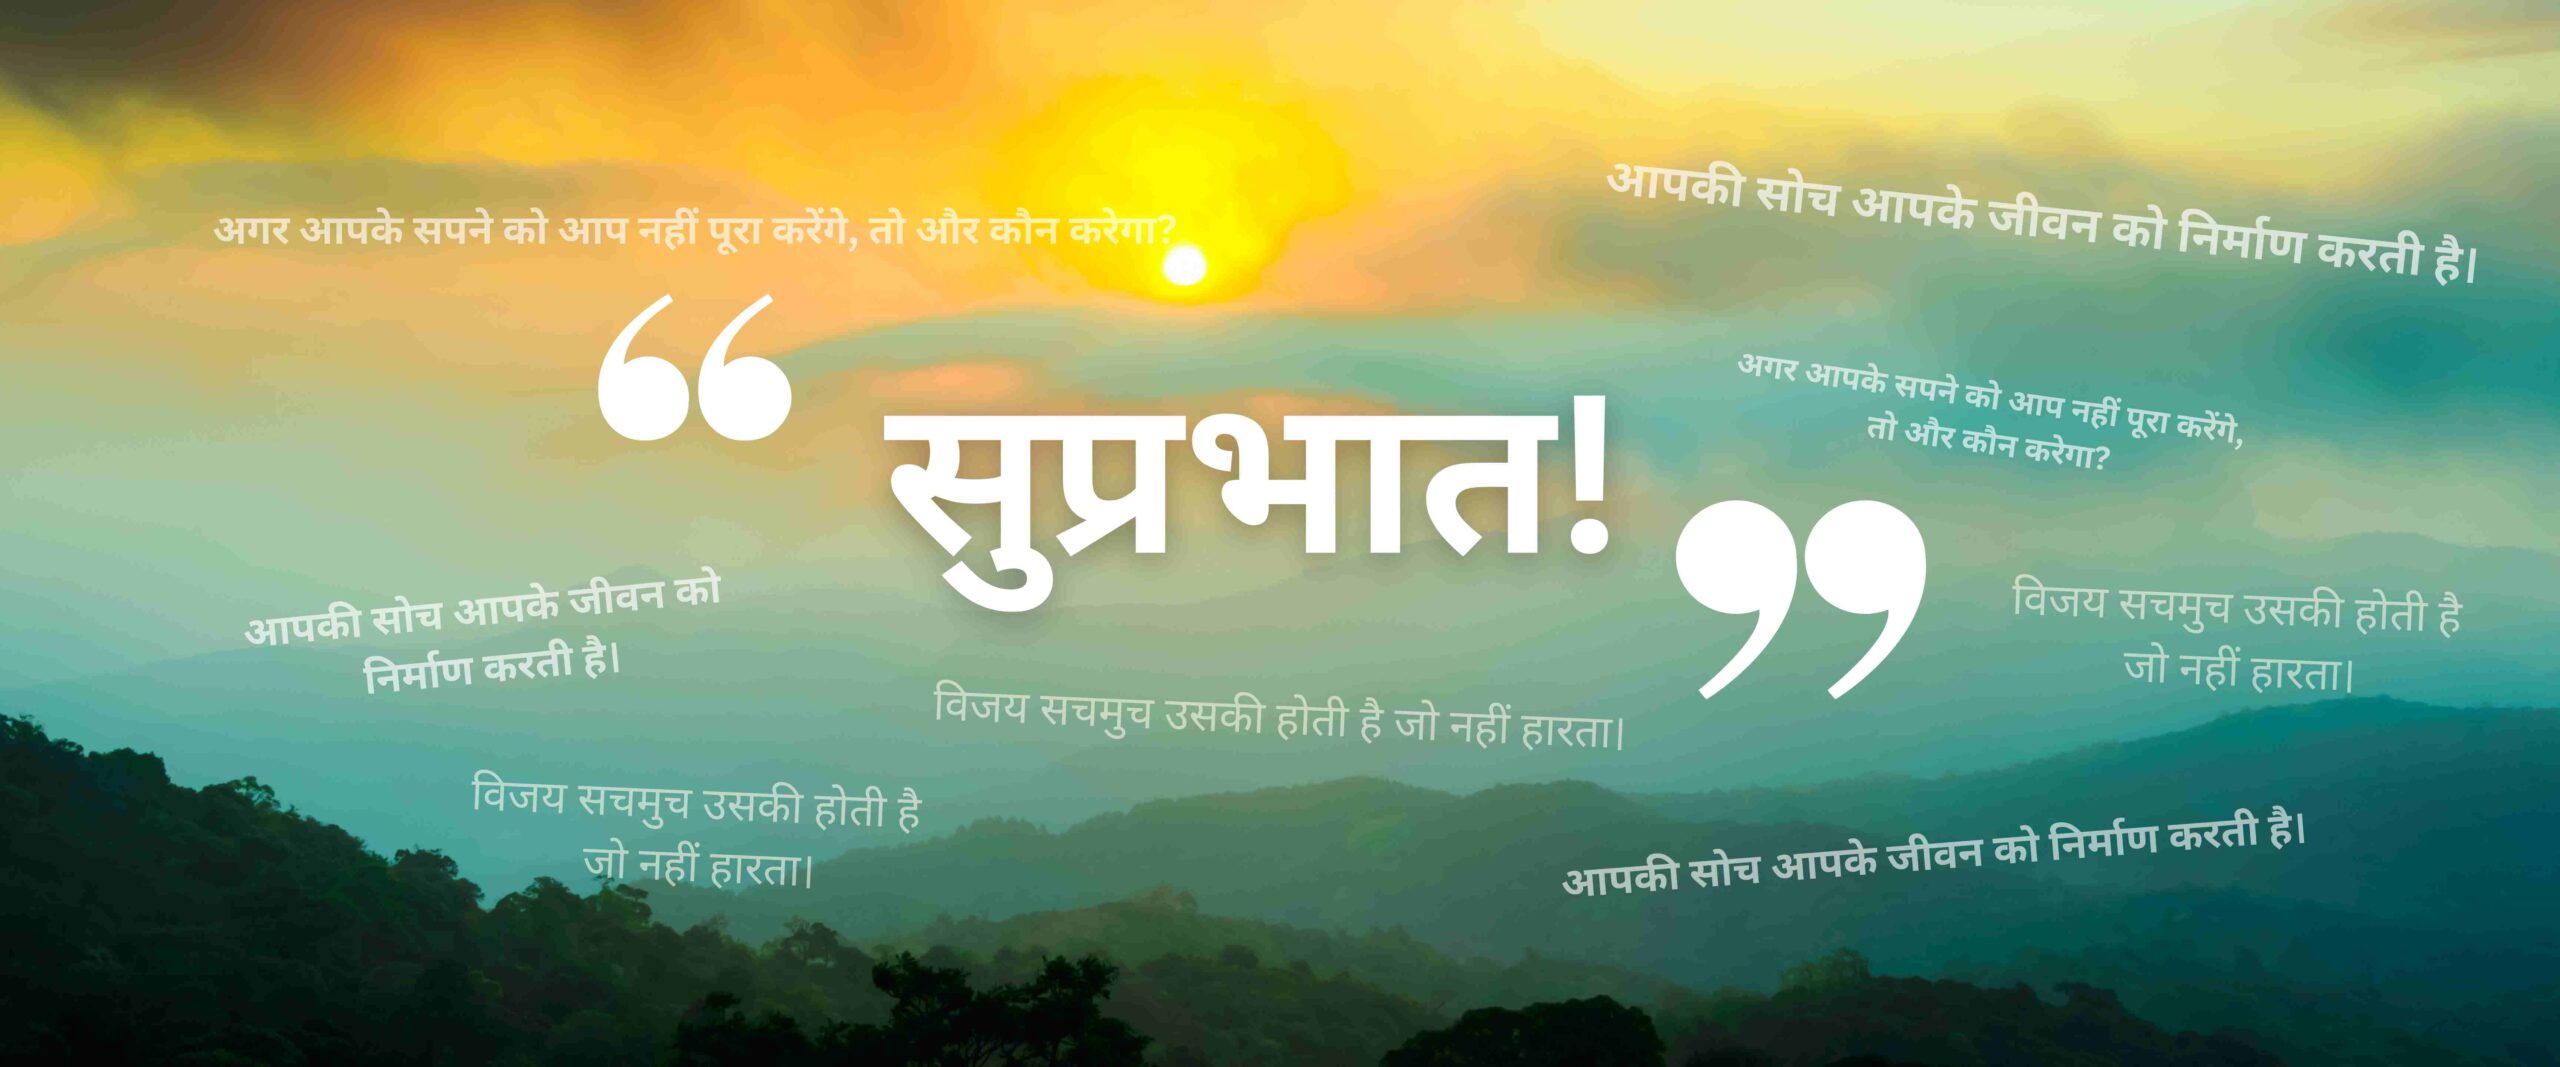 good morning hindi quotes banner image